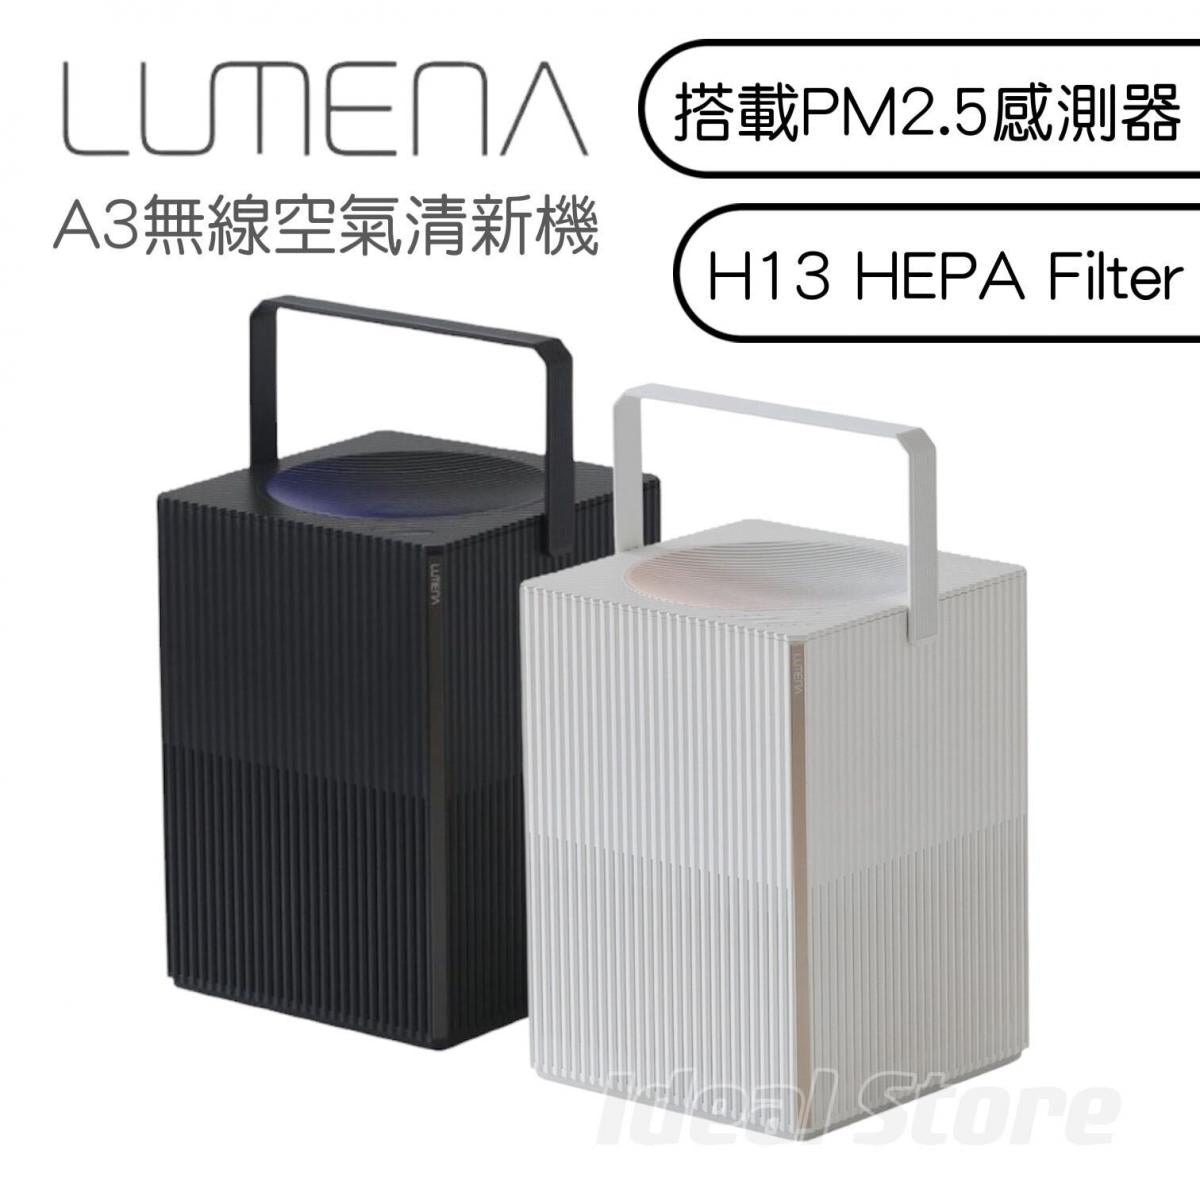 Lumena - A3 Wireless Air Purifier | Portable Air Purifier | Air Purifier | HEPA H13 Filter | Removable